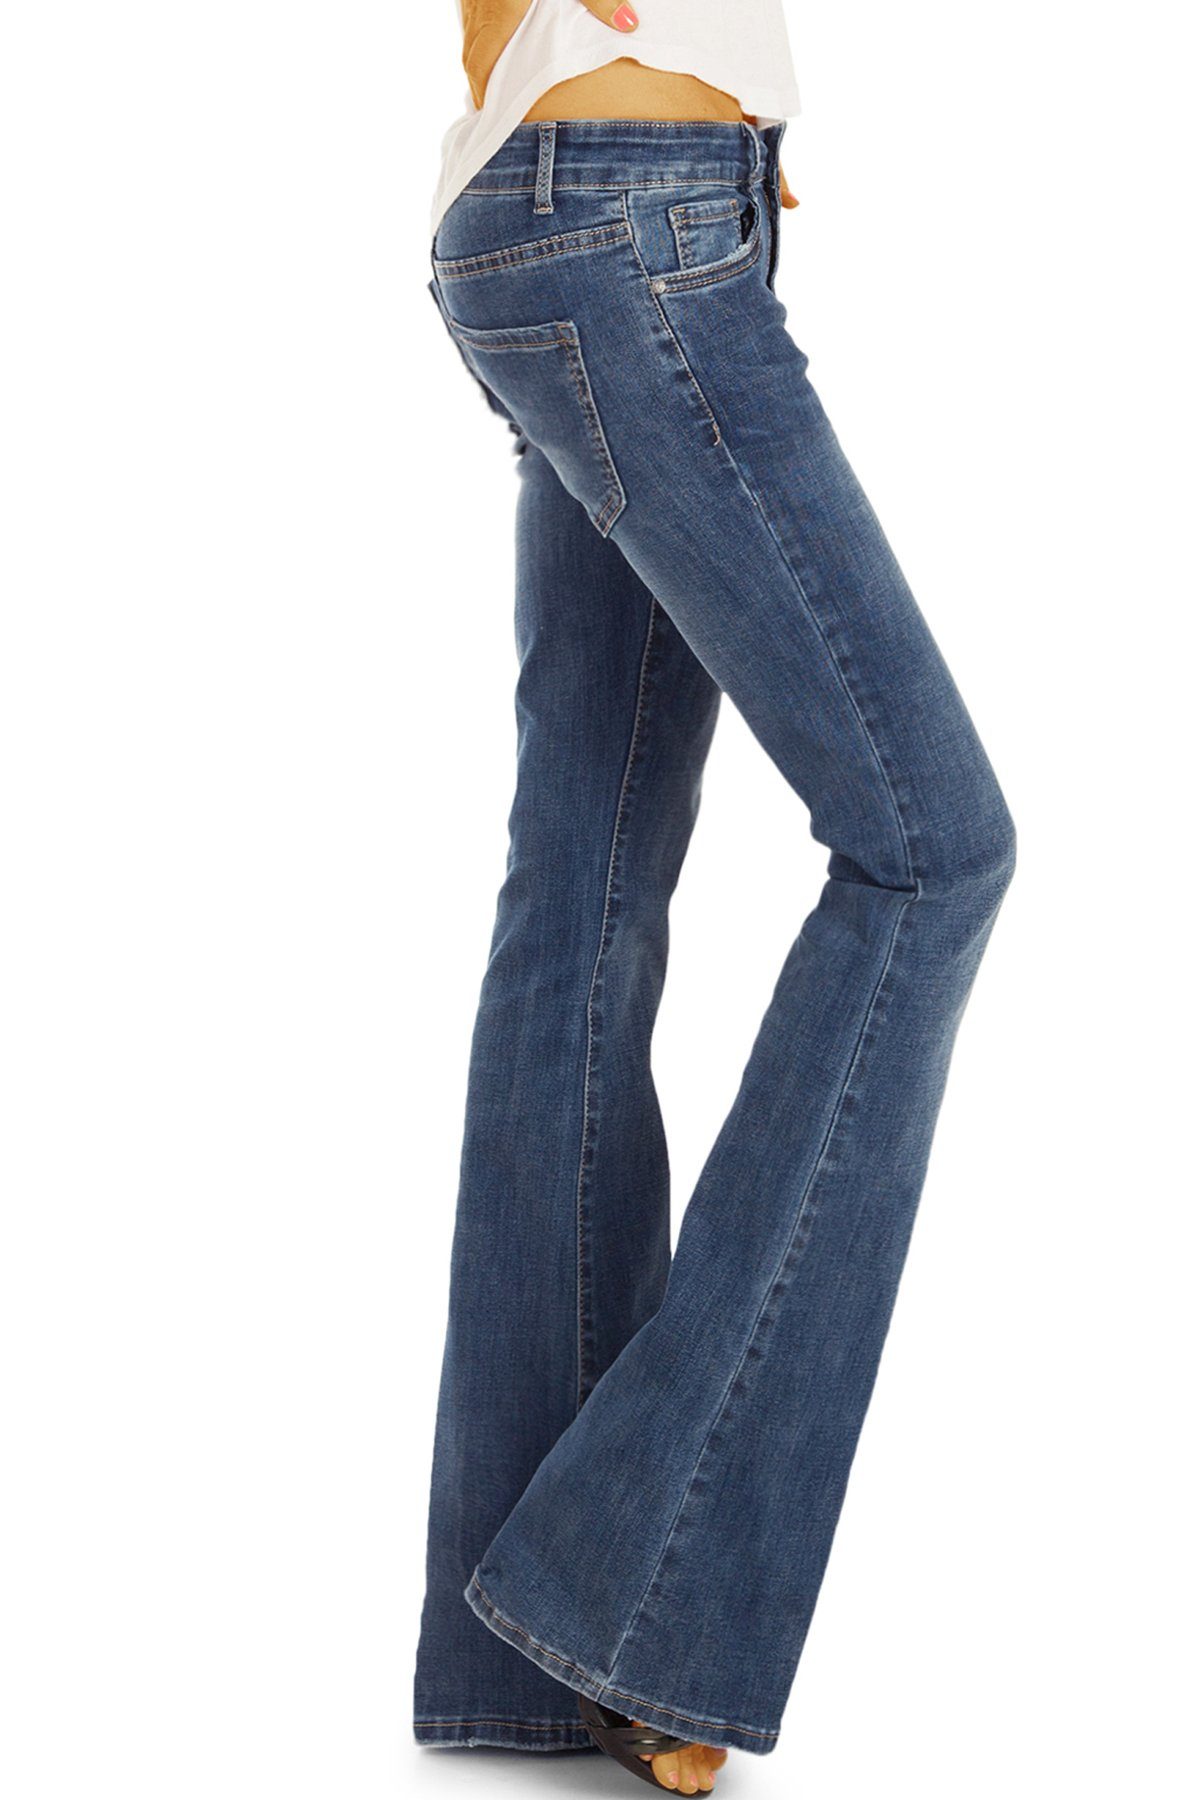 5-pocket dunkelblau in ausgestelltes be styled Bein Damenhose, und Bootcut-Jeans denimblau j16p medium waist